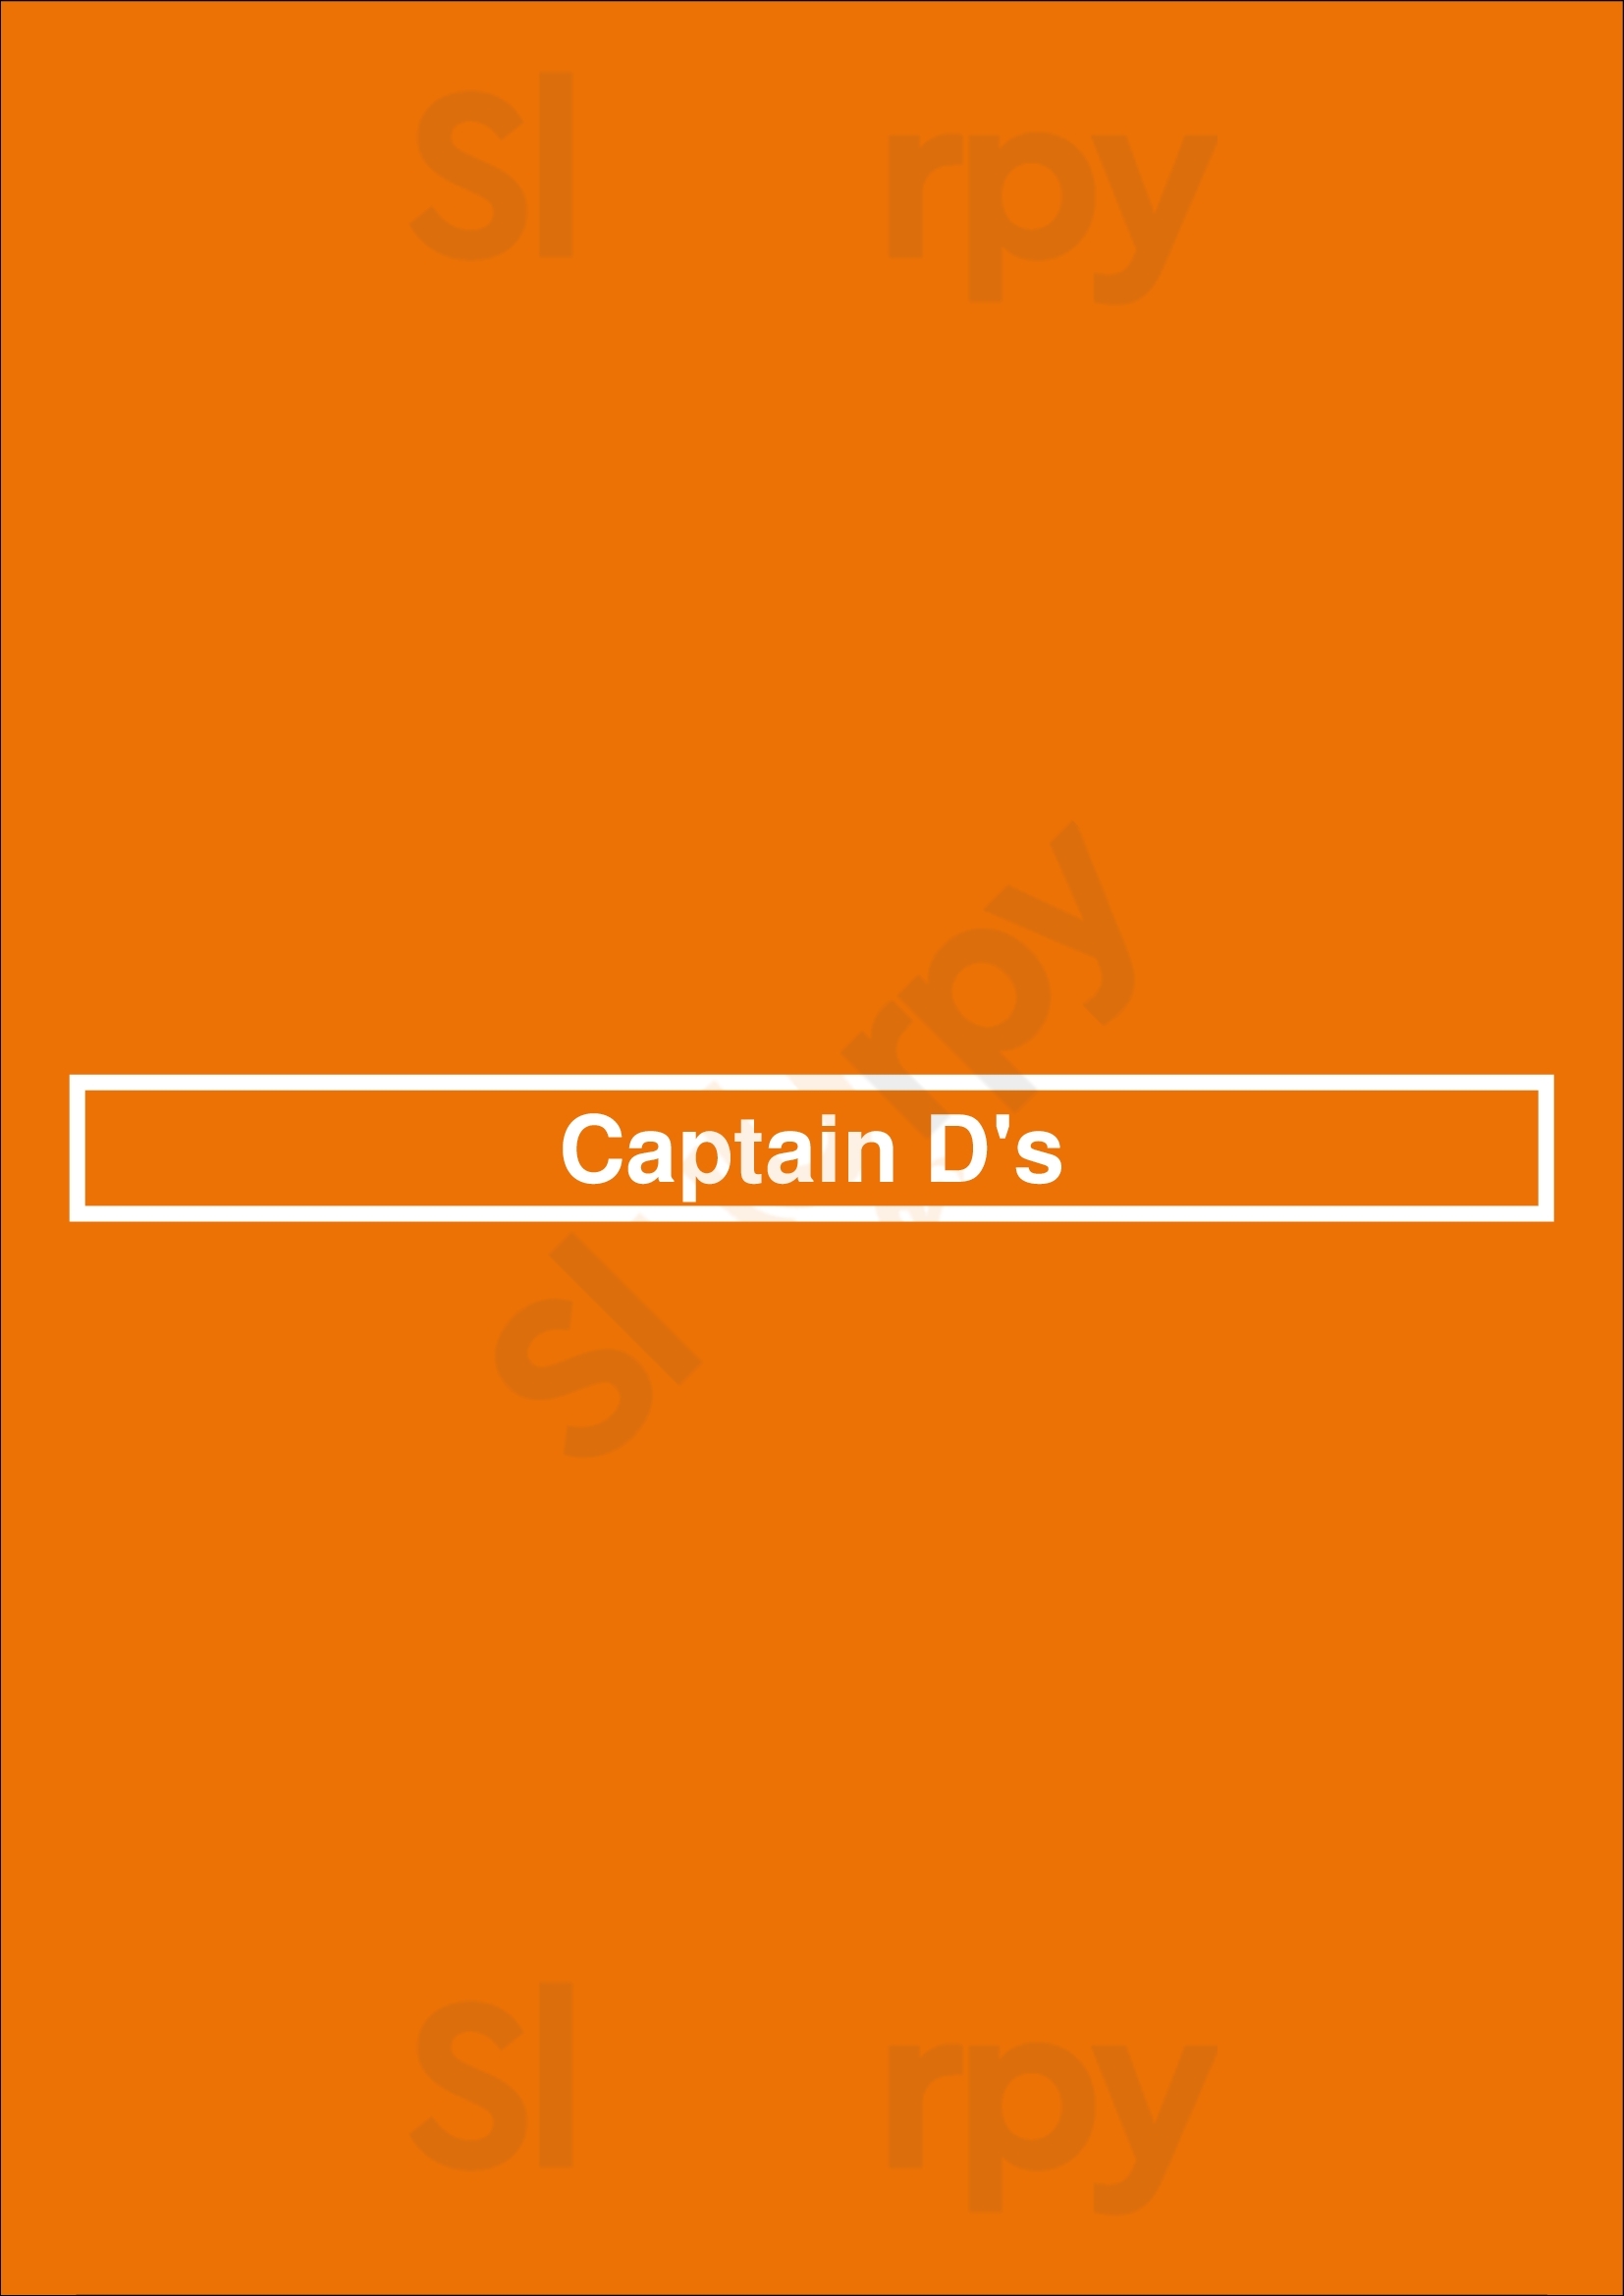 Captain D's Mount Juliet Menu - 1